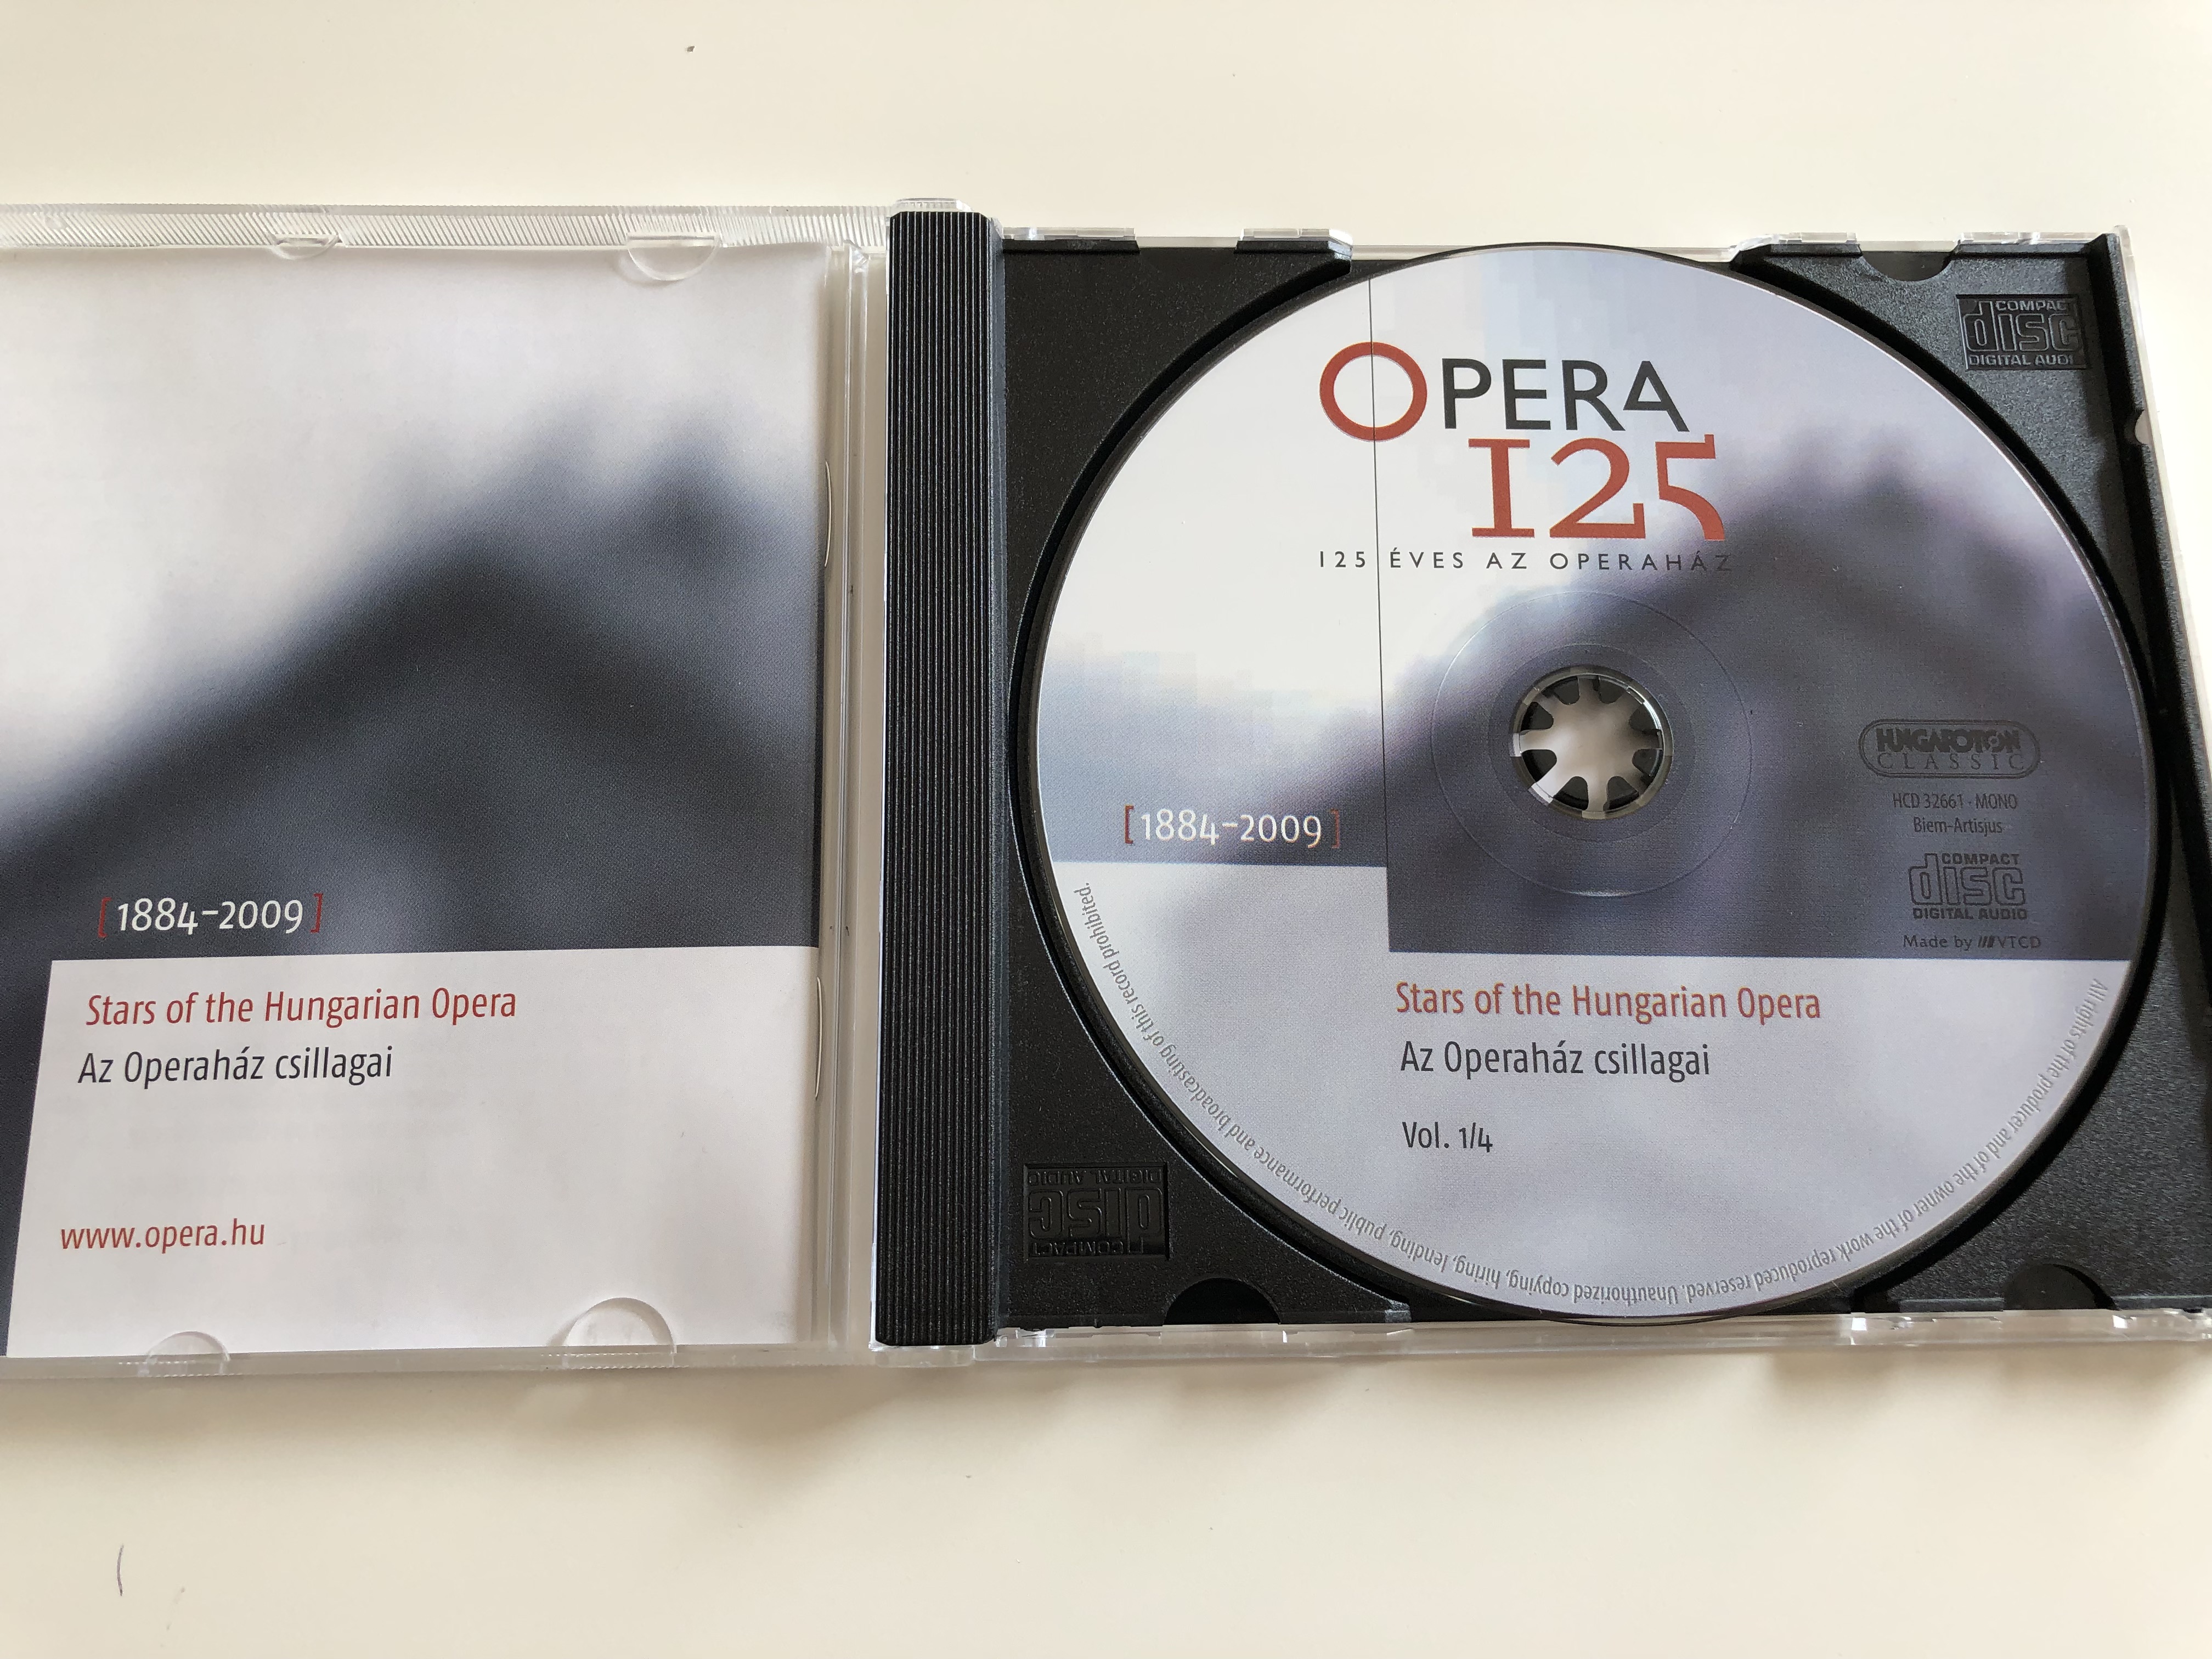 opera-125-125-ves-az-operah-z-125-years-of-the-hungarian-opera-house-1884-2009-stars-of-the-hungarian-opera-az-operah-z-csillagai-vol.-14-hungaroton-classic-hcd-32661-audio-cd-2009-11-.jpg